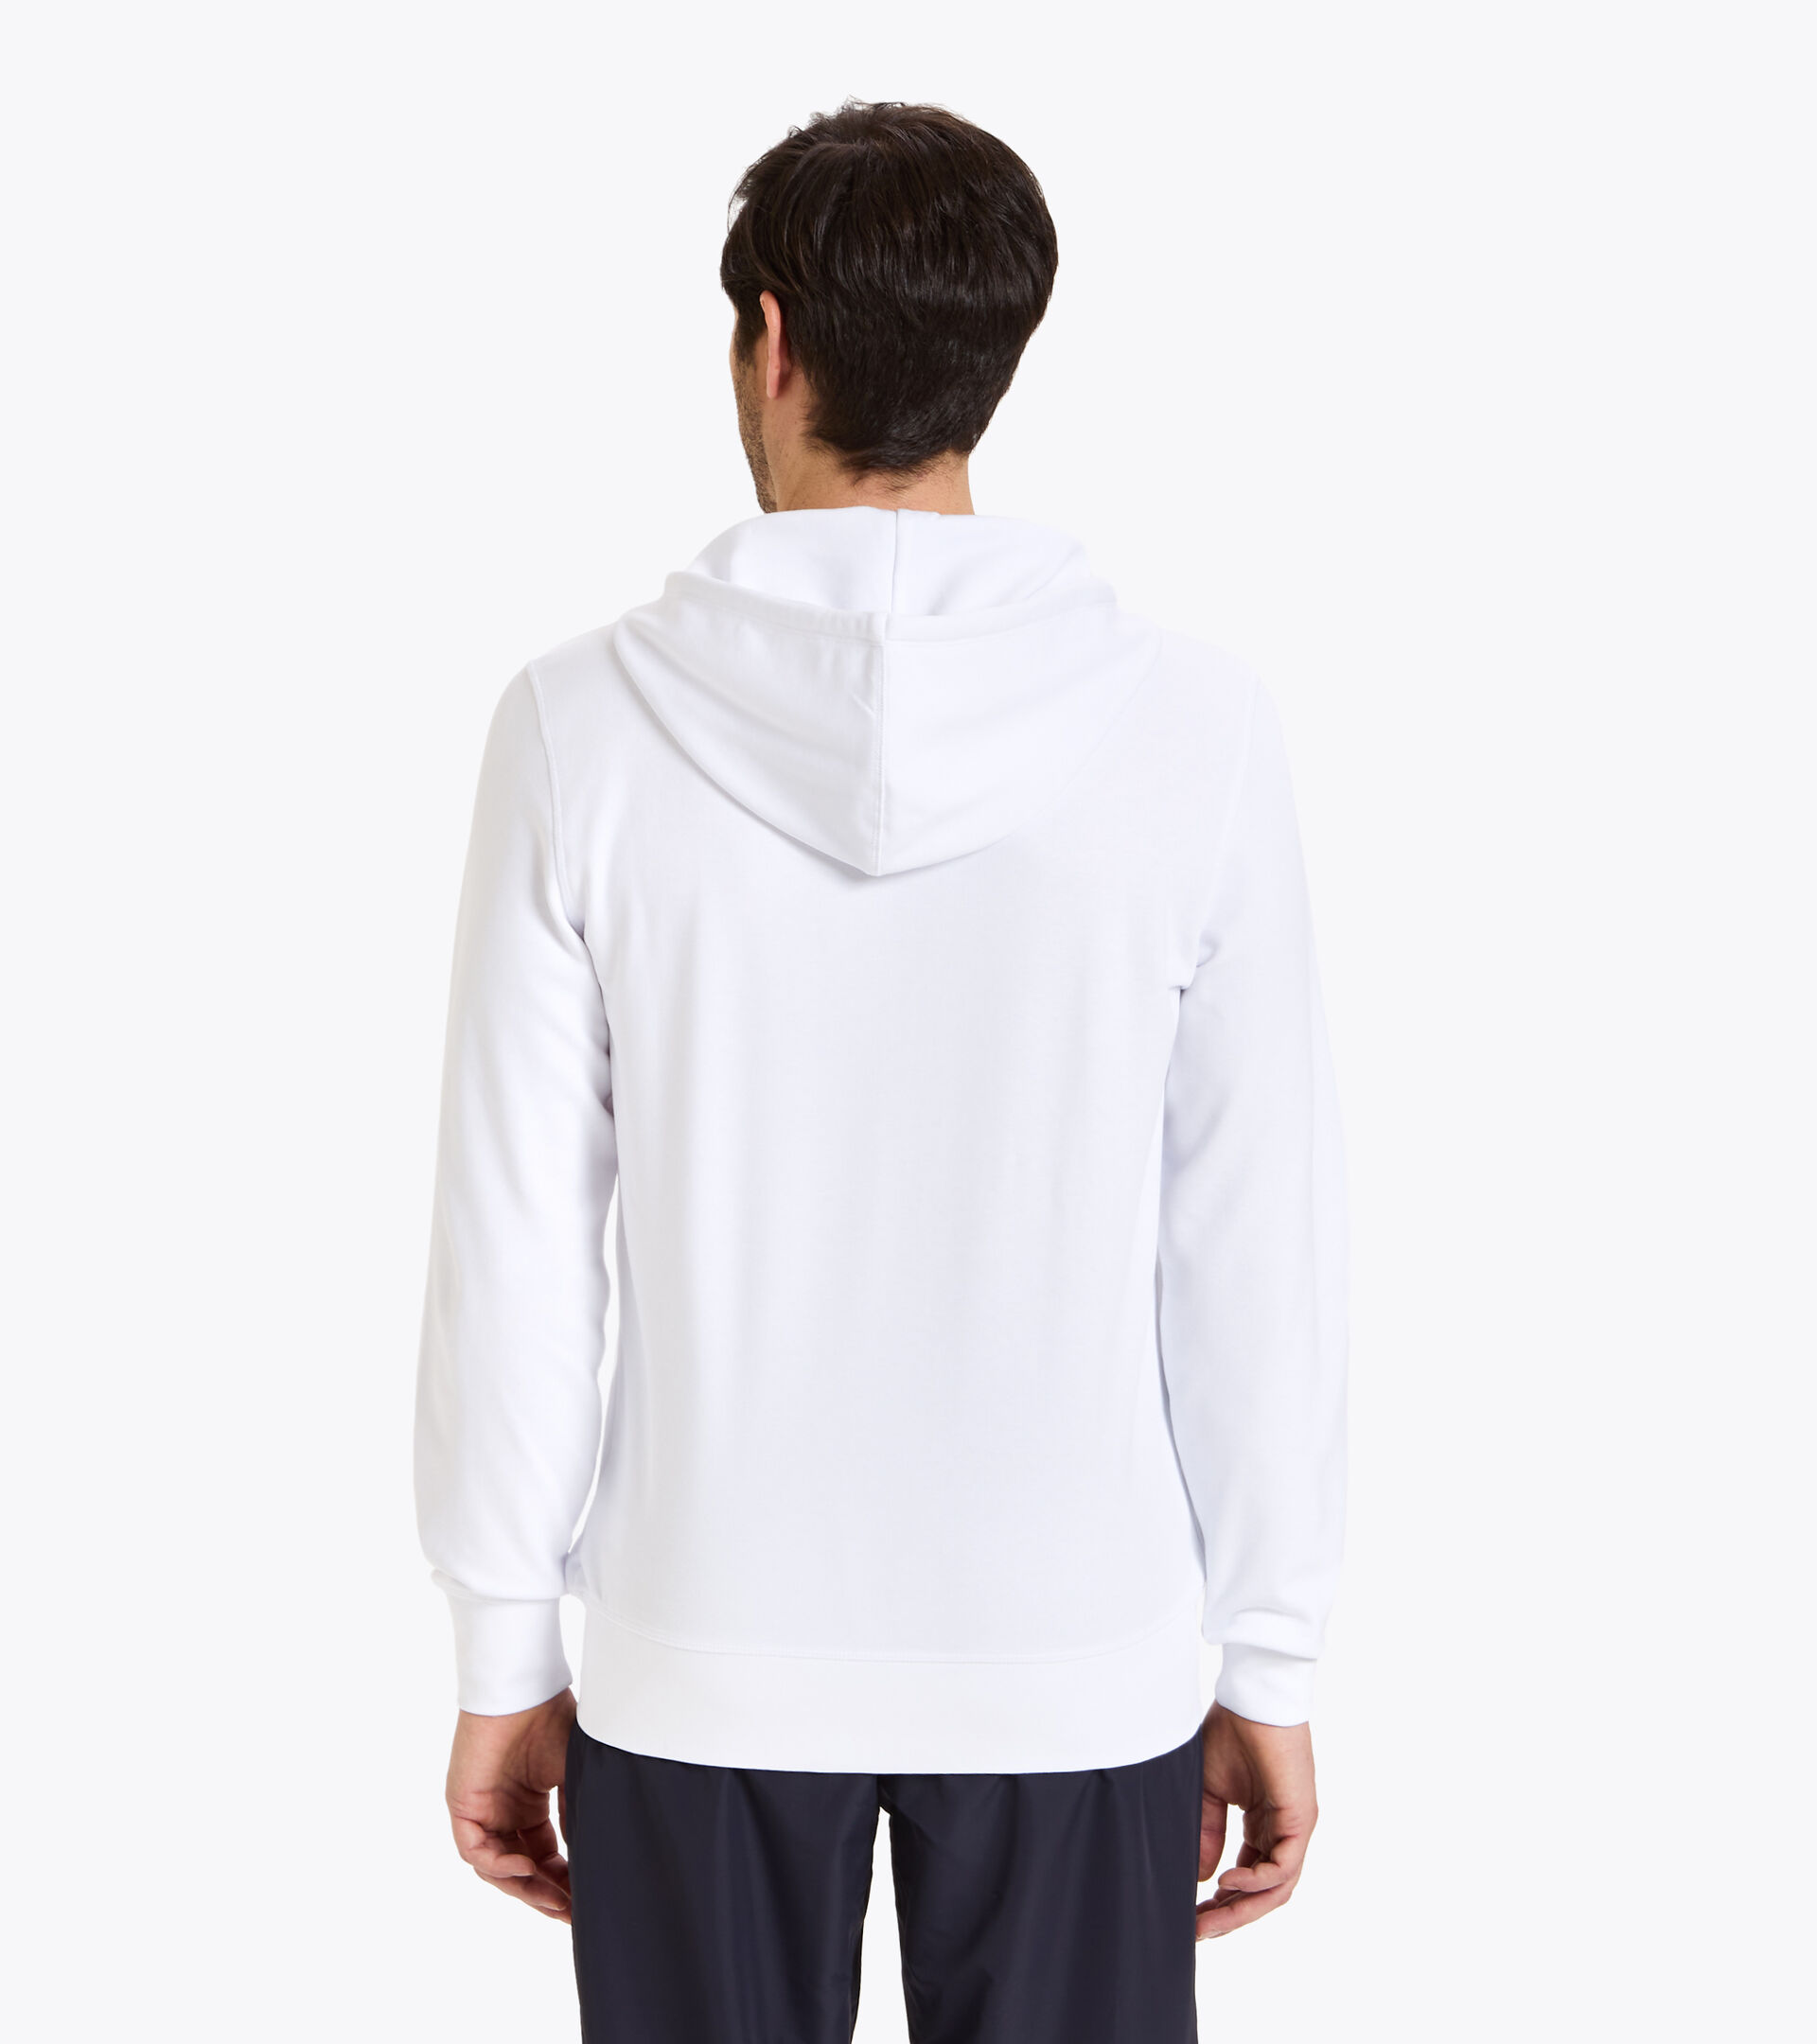 Tennis full zipper hoodie - Men HD FZ SWEAT DIADORA CLUB OPTICAL WHITE - Diadora